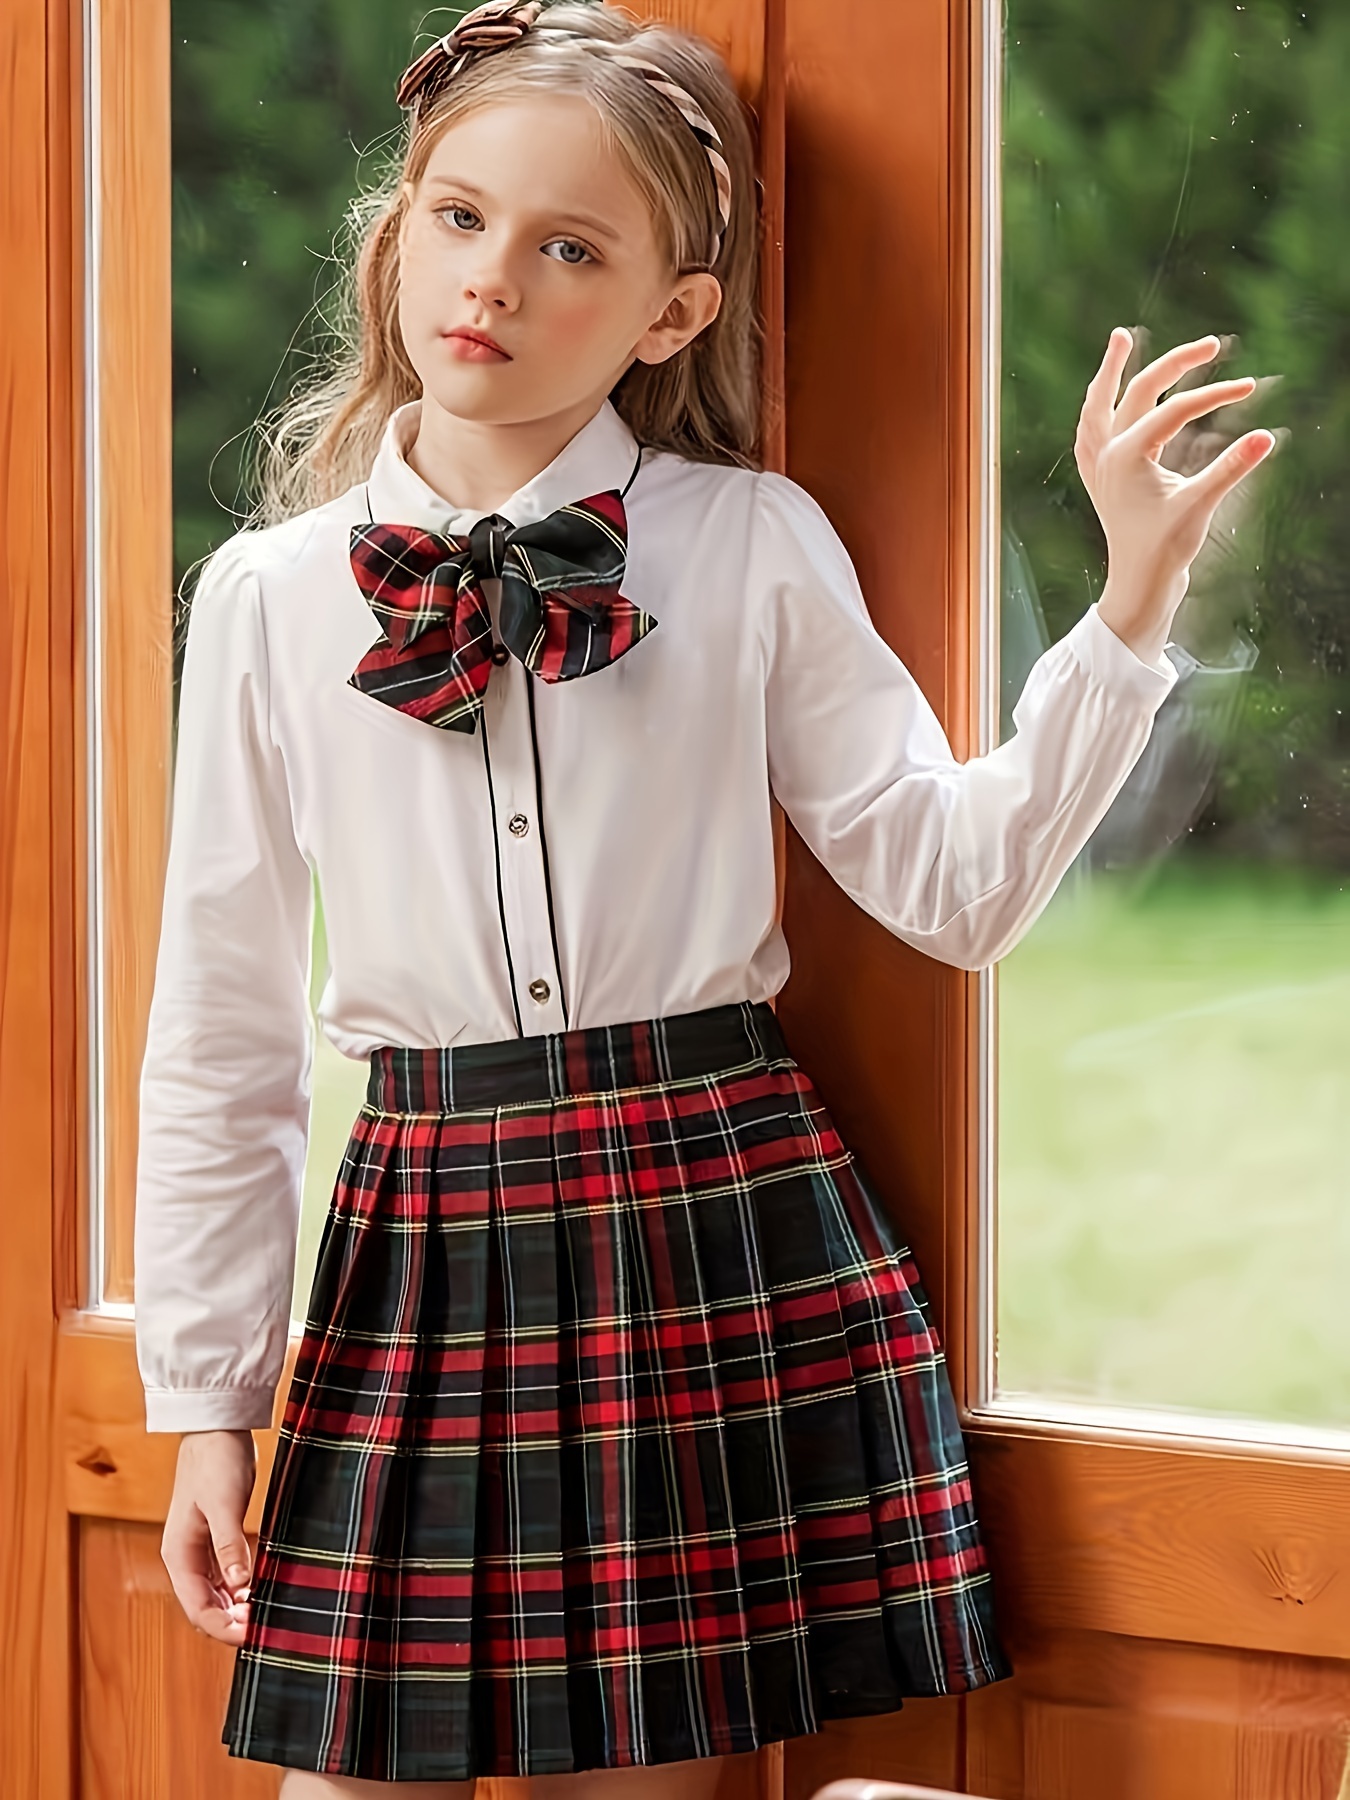 Criss Cross Suspender Skirt – L'école Des Femmes